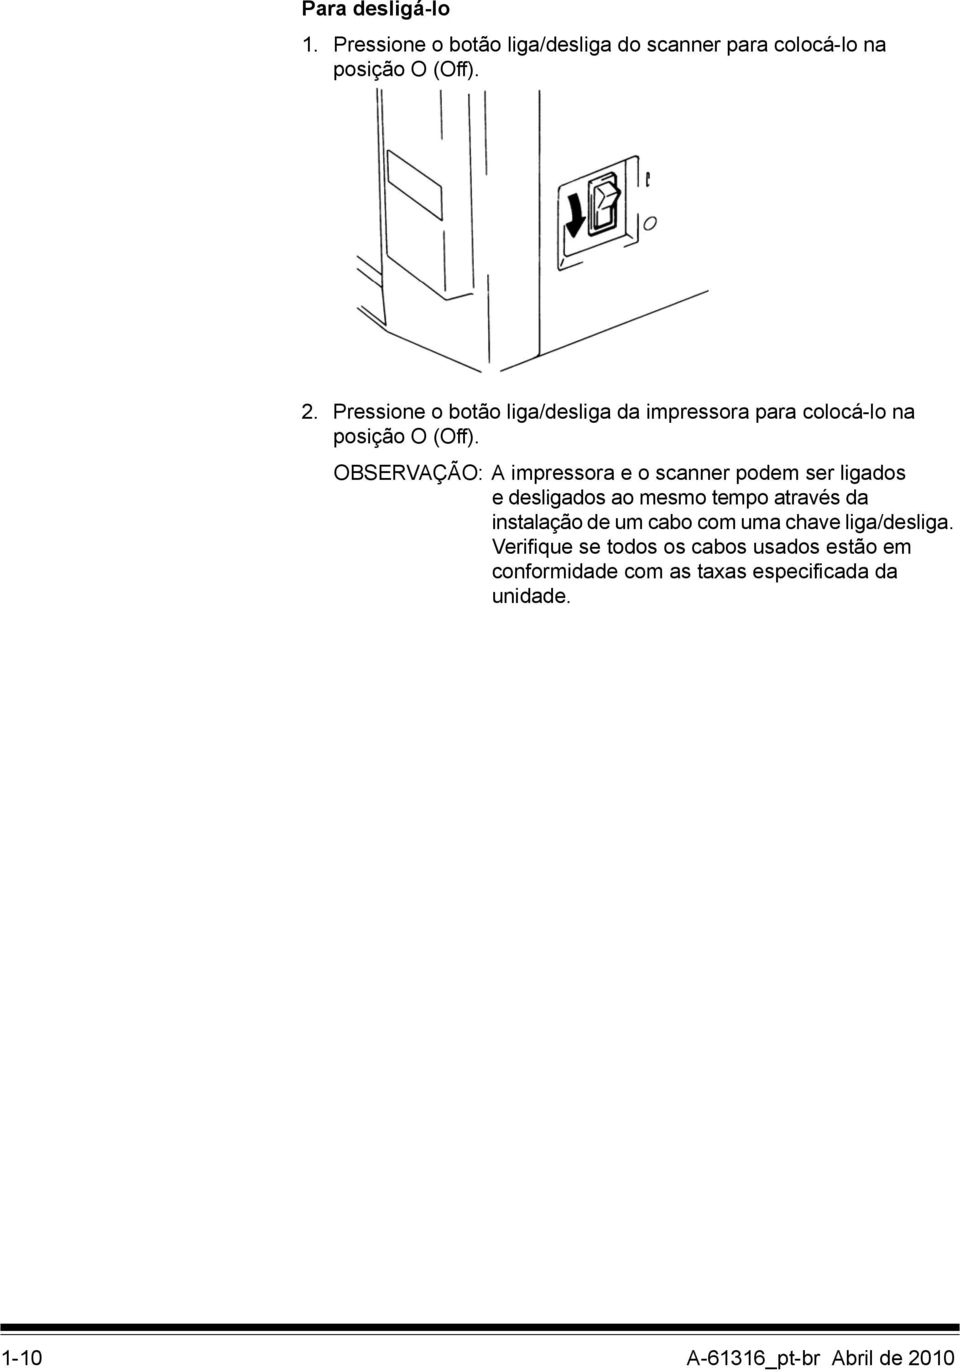 OBSERVAÇÃO: A impressora e o scanner podem ser ligados e desligados ao mesmo tempo através da instalação de um